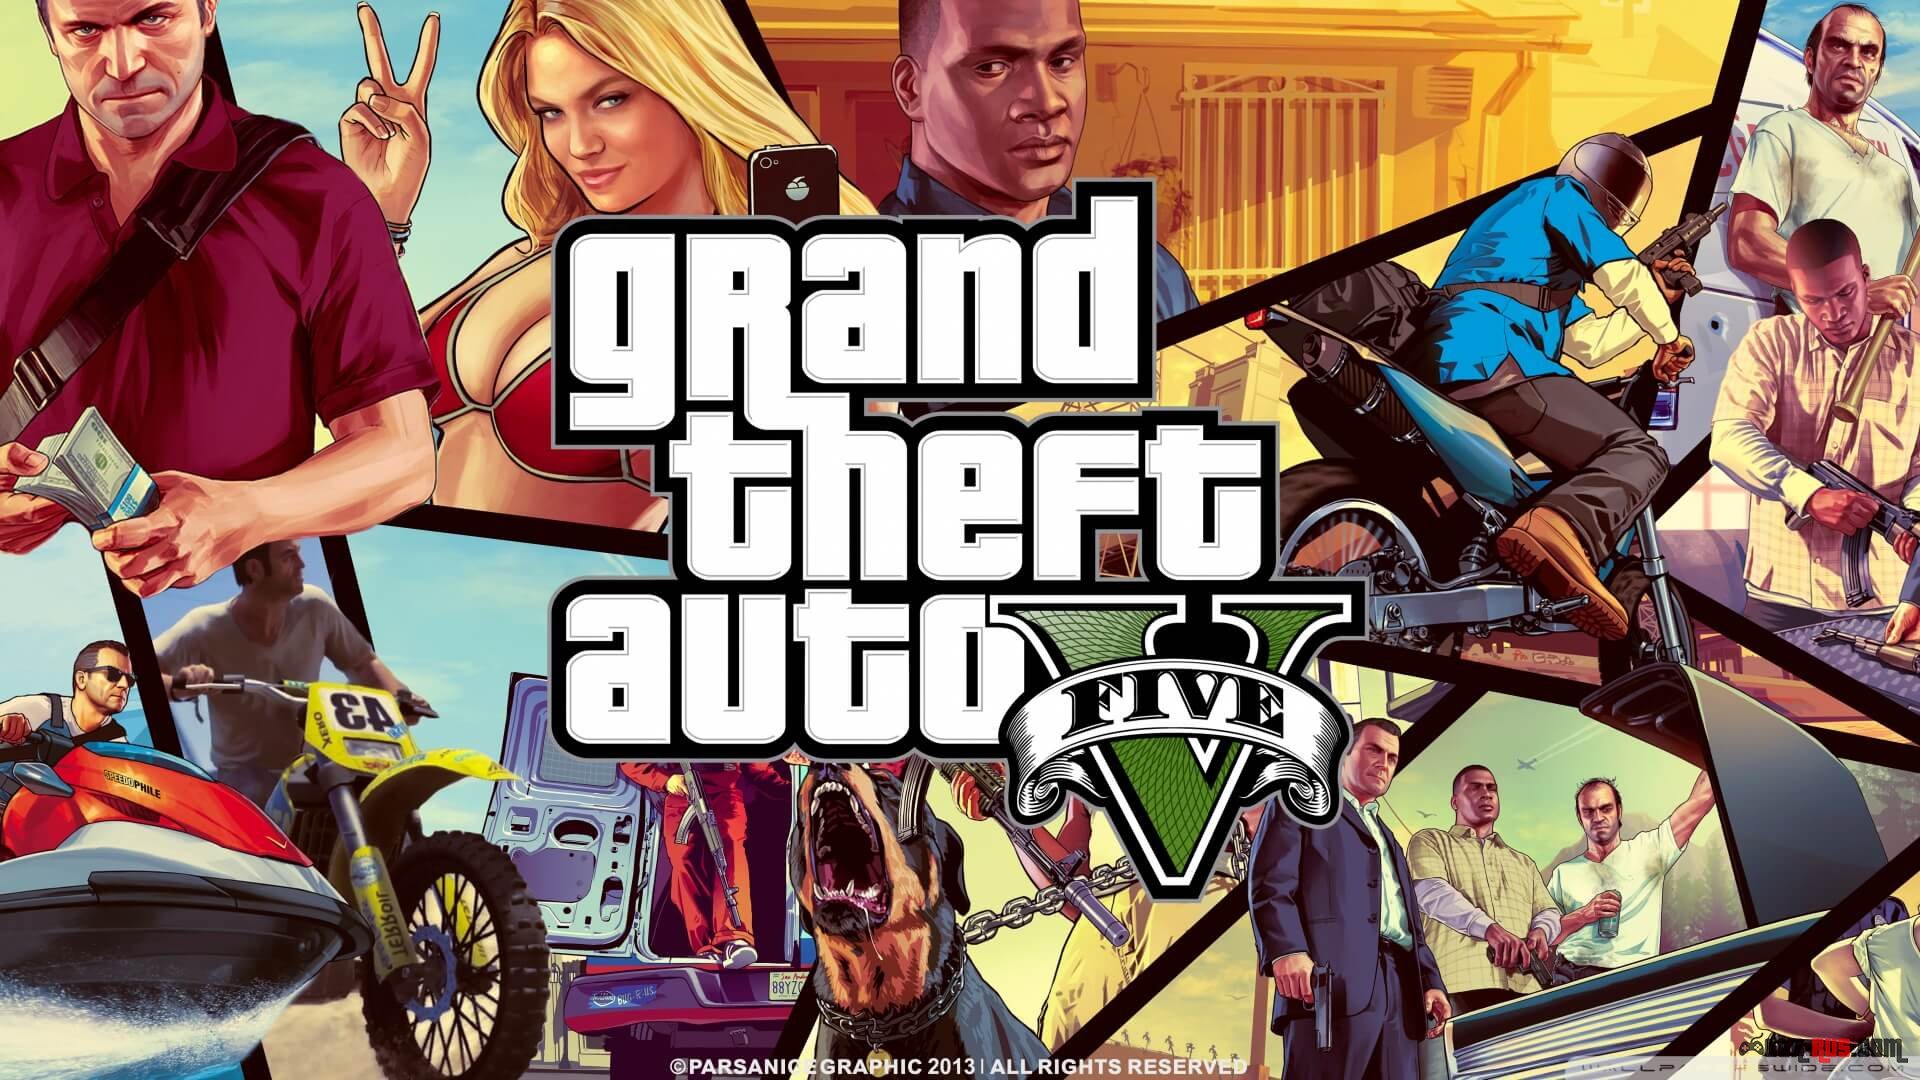 Grand Theft Auto V - самая продаваемая игра всех времен, согласно NPD